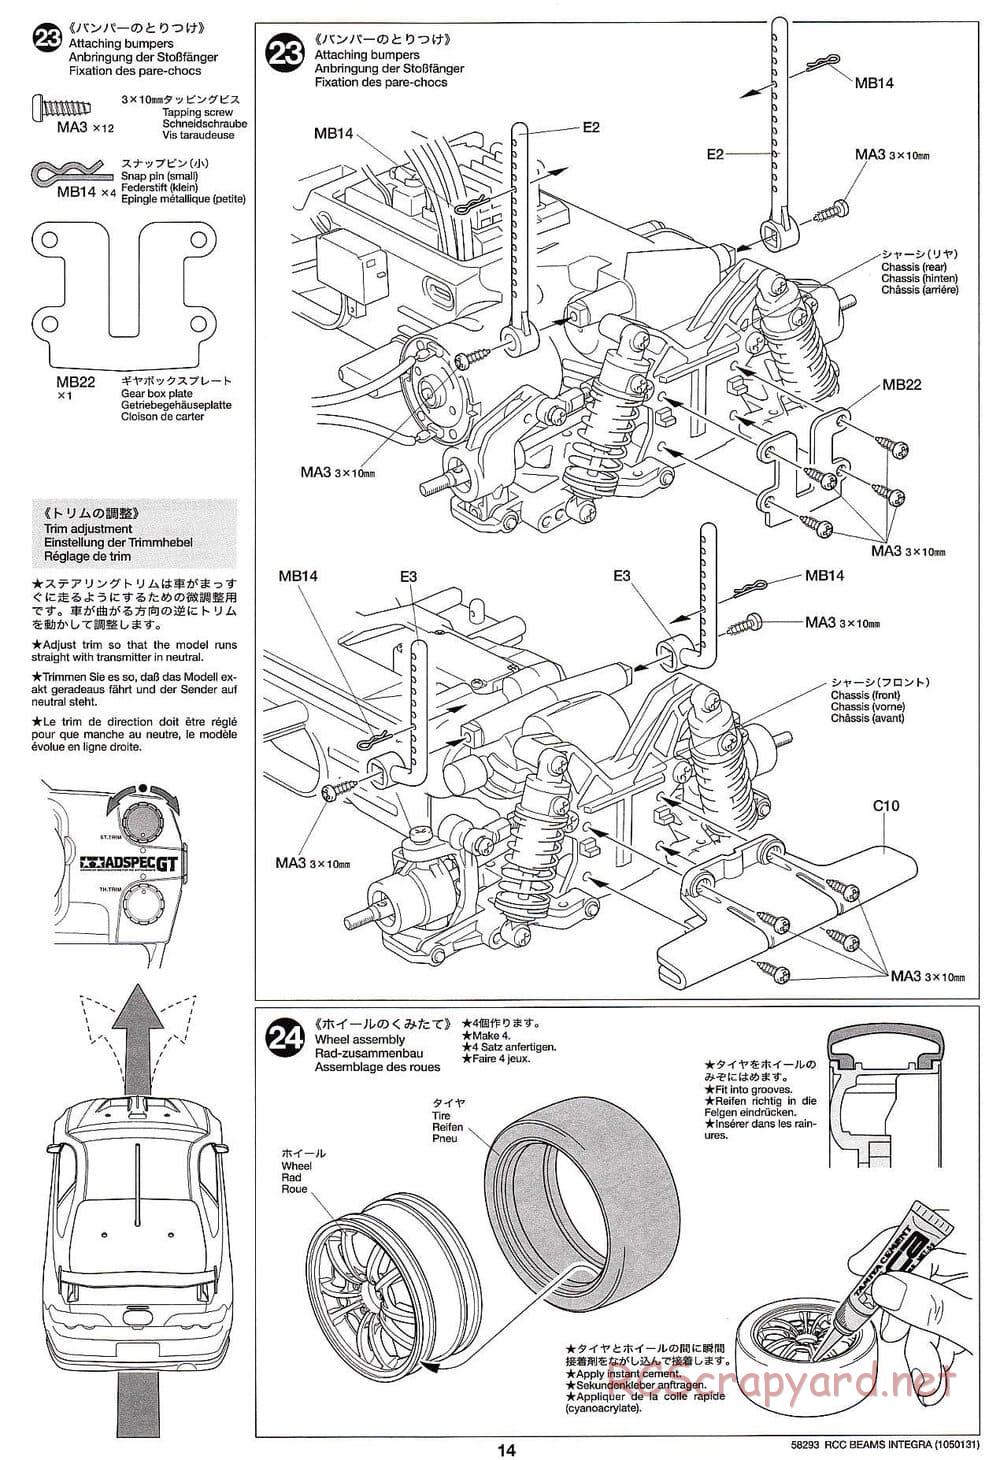 Tamiya - Beams Integra - TL-01 LA Chassis - Manual - Page 14